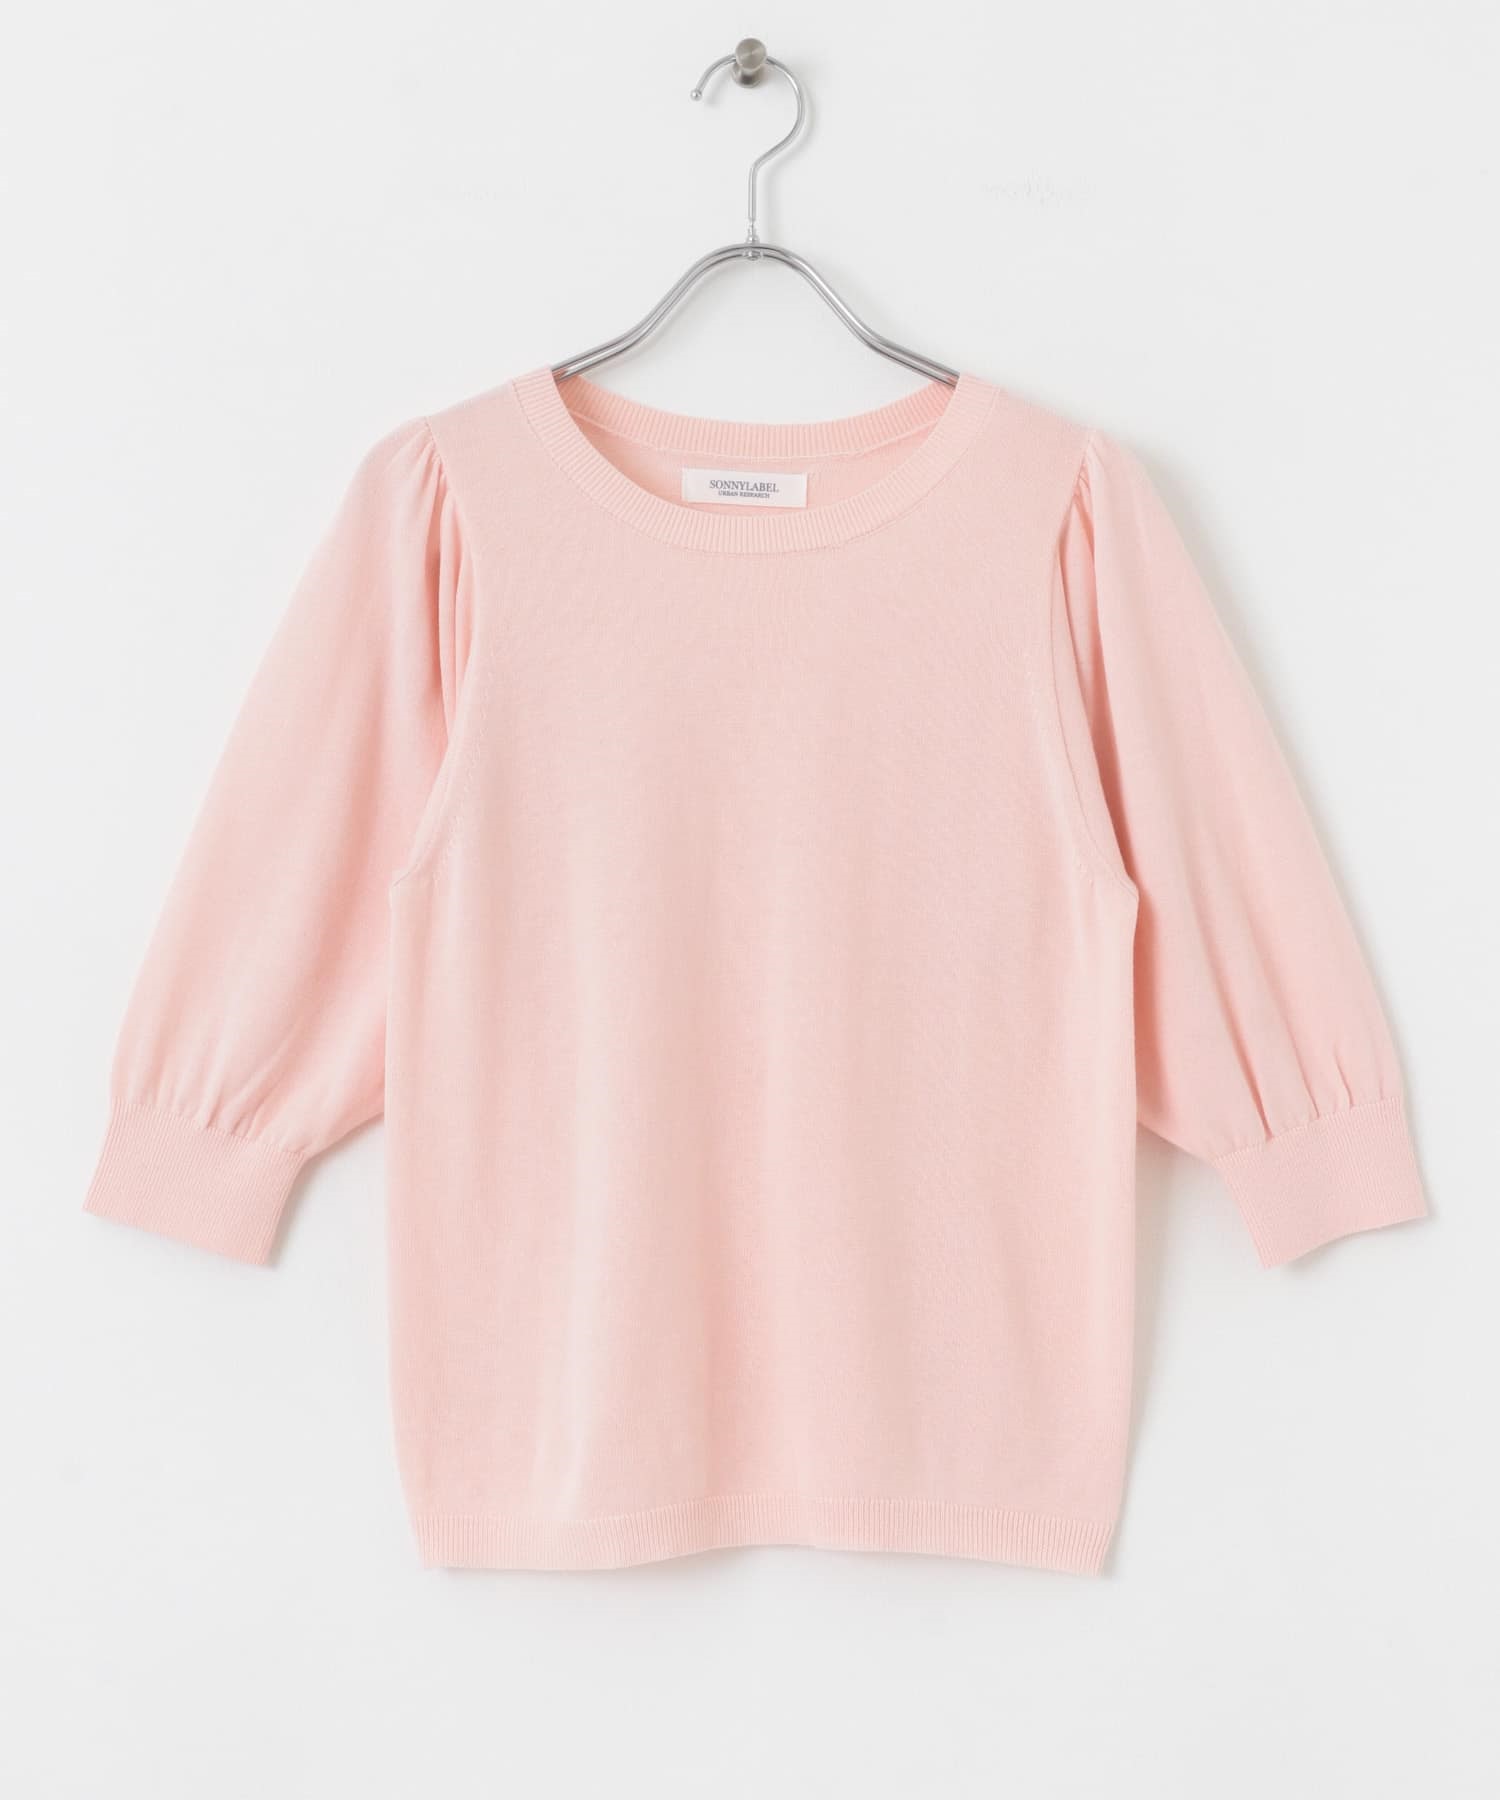 接觸涼感Coolmist針織衫(粉紅色-FREE-PINK)